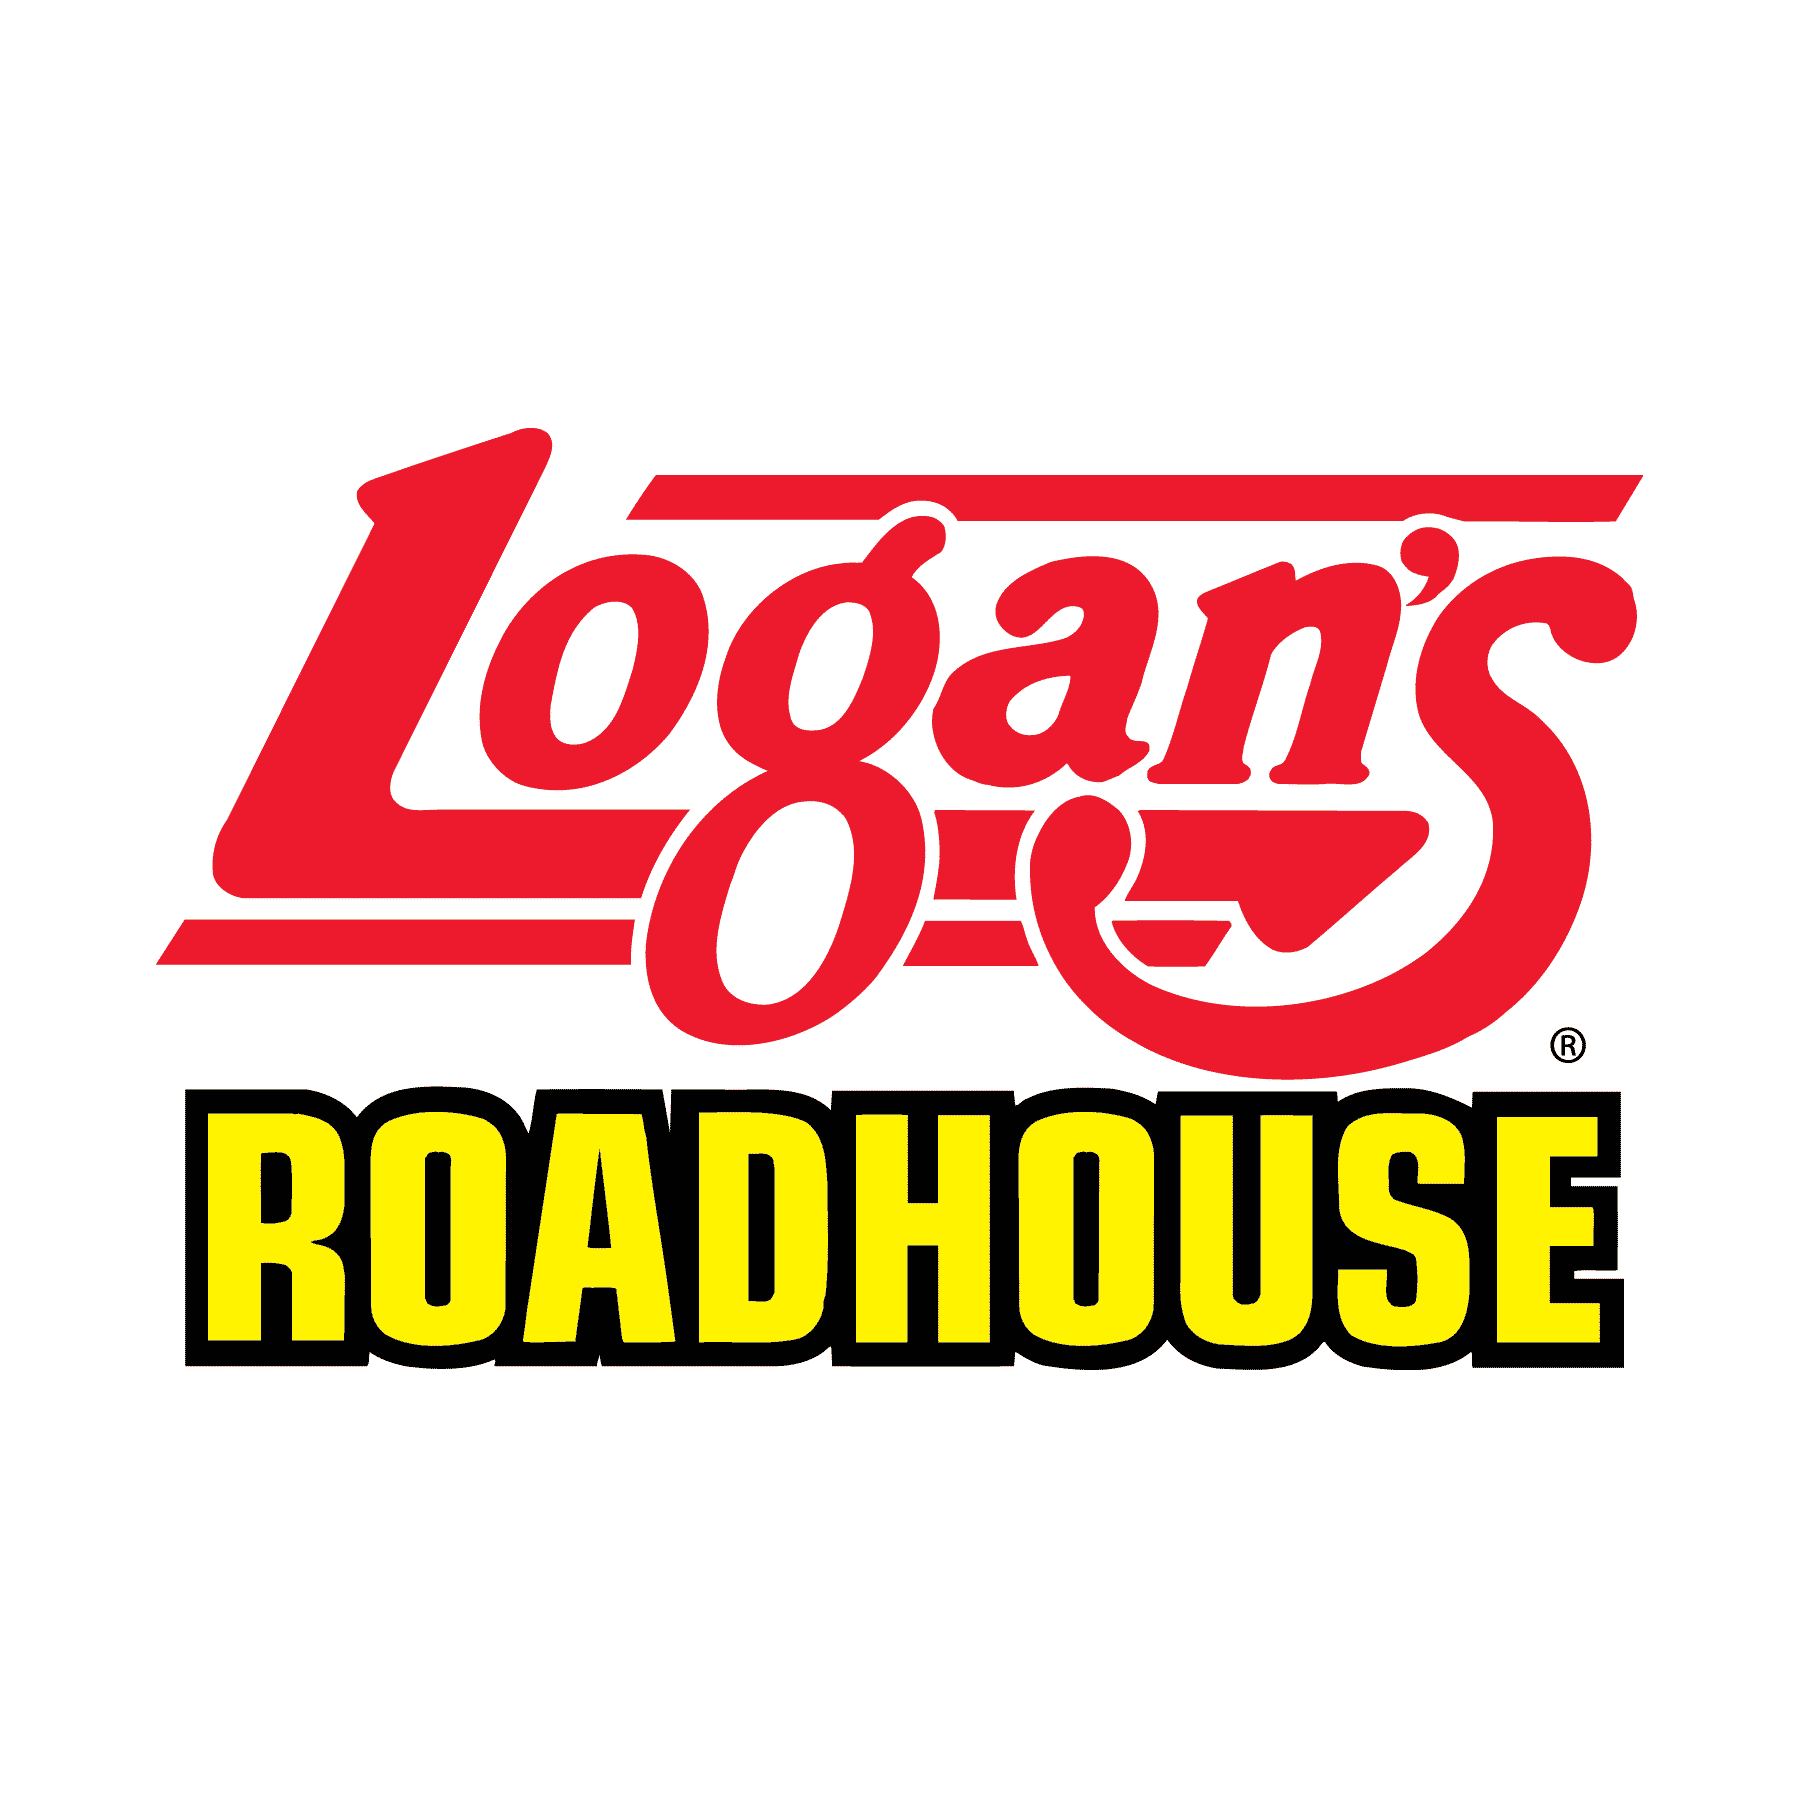 Logan's Roadhouse Logo - FavIcon Logo. Logan's Roadhouse